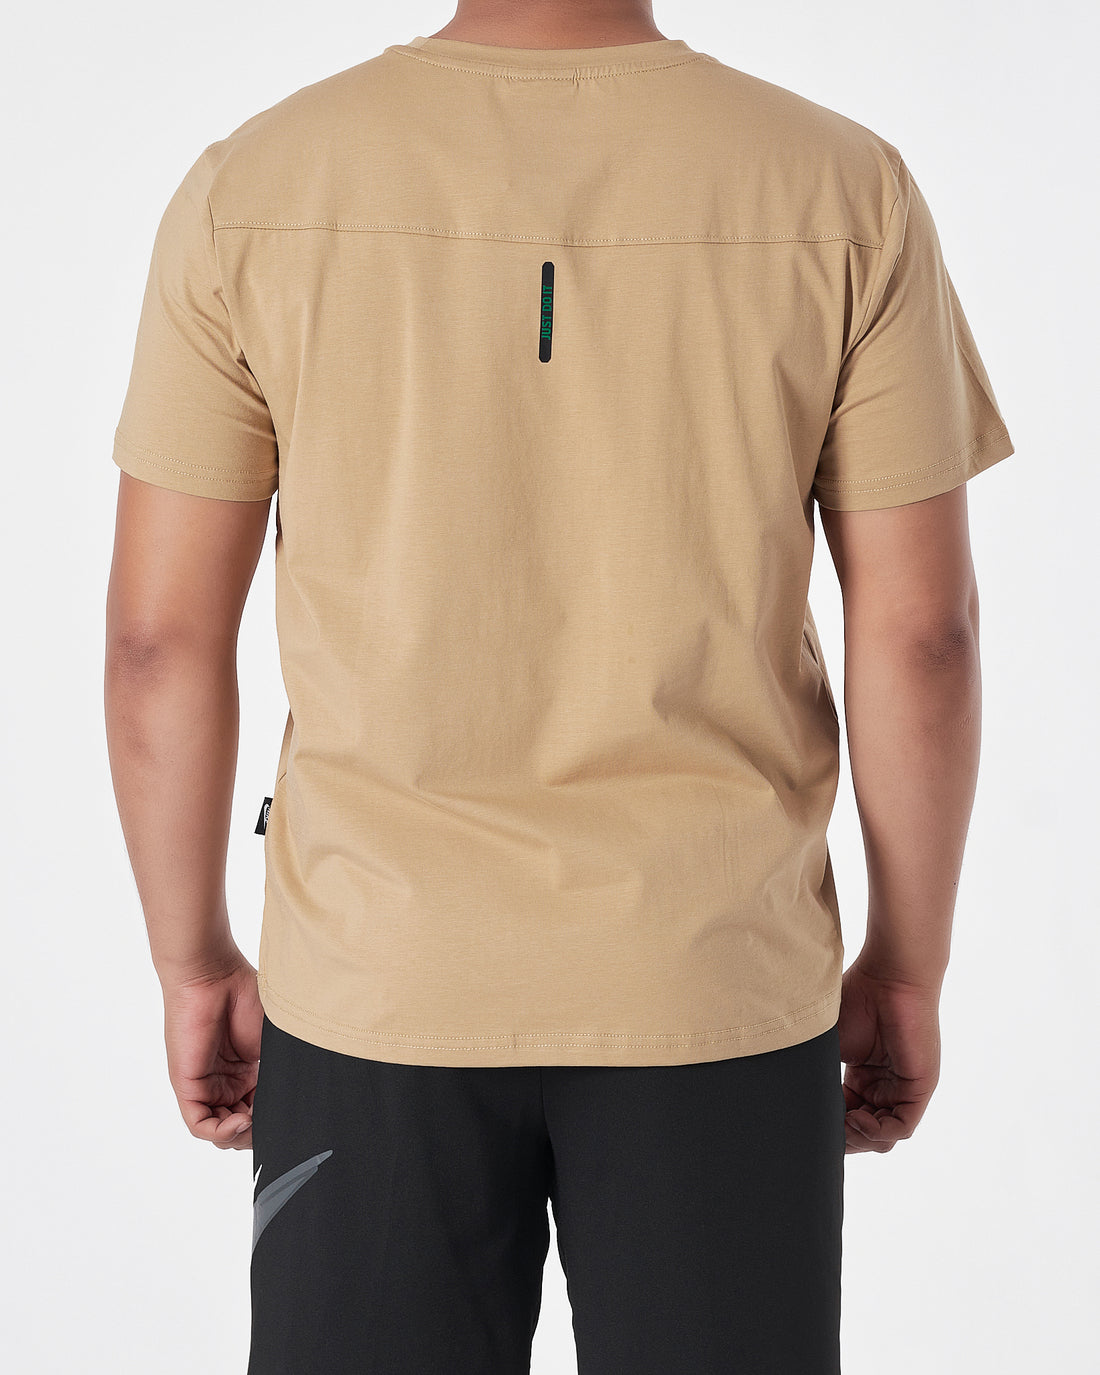 NIK Swooh  Shoulder Printed Men Cream T-Shirt 13.50